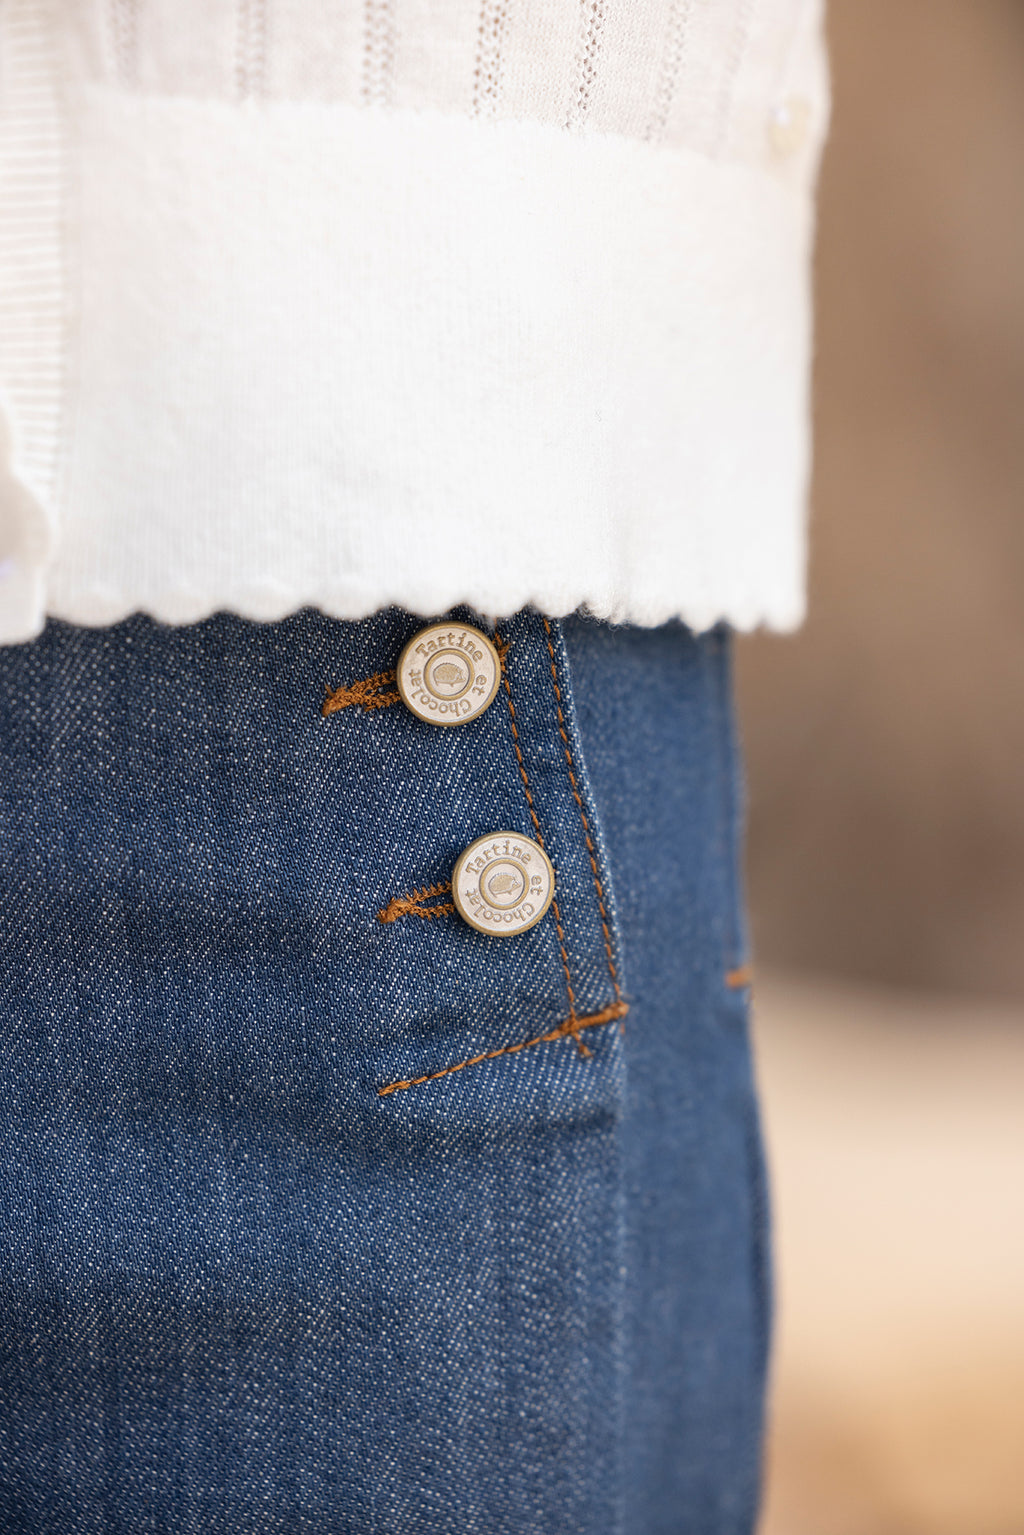 Jeans - Navy Triple buttonhole